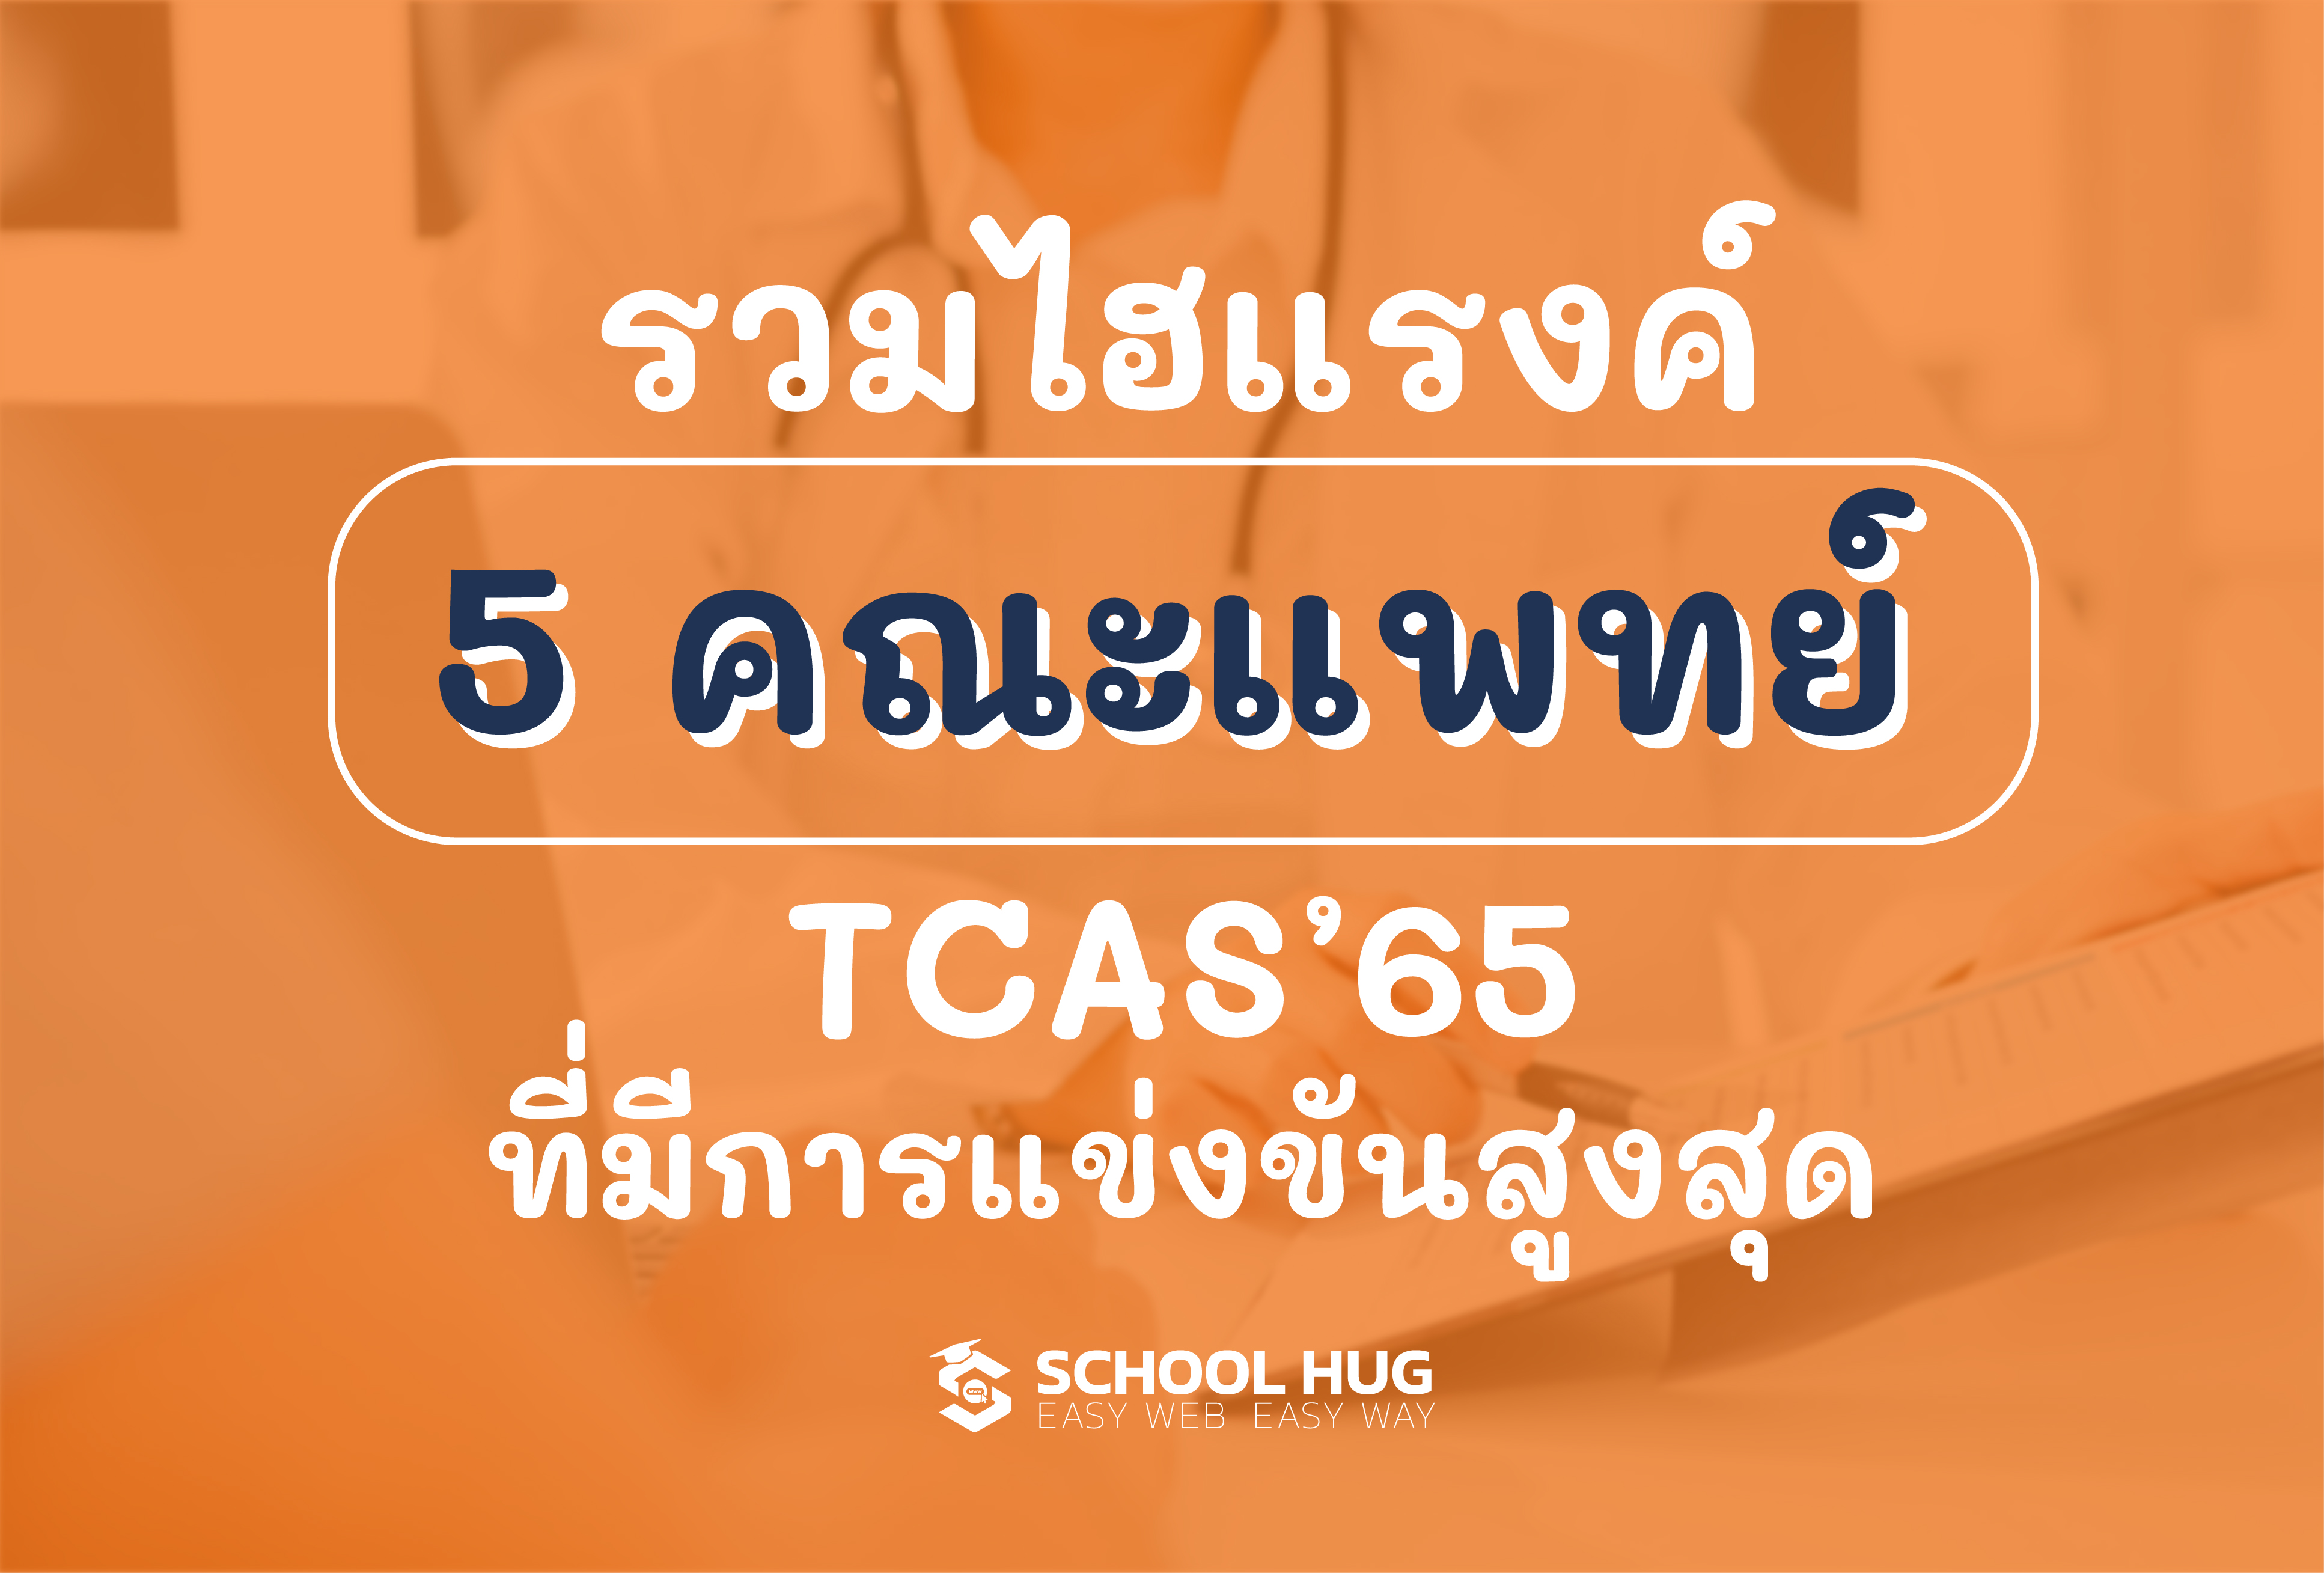 5 คณะแพทย์ TCAS65 ที่มีการแข่งขันสูงที่สุด